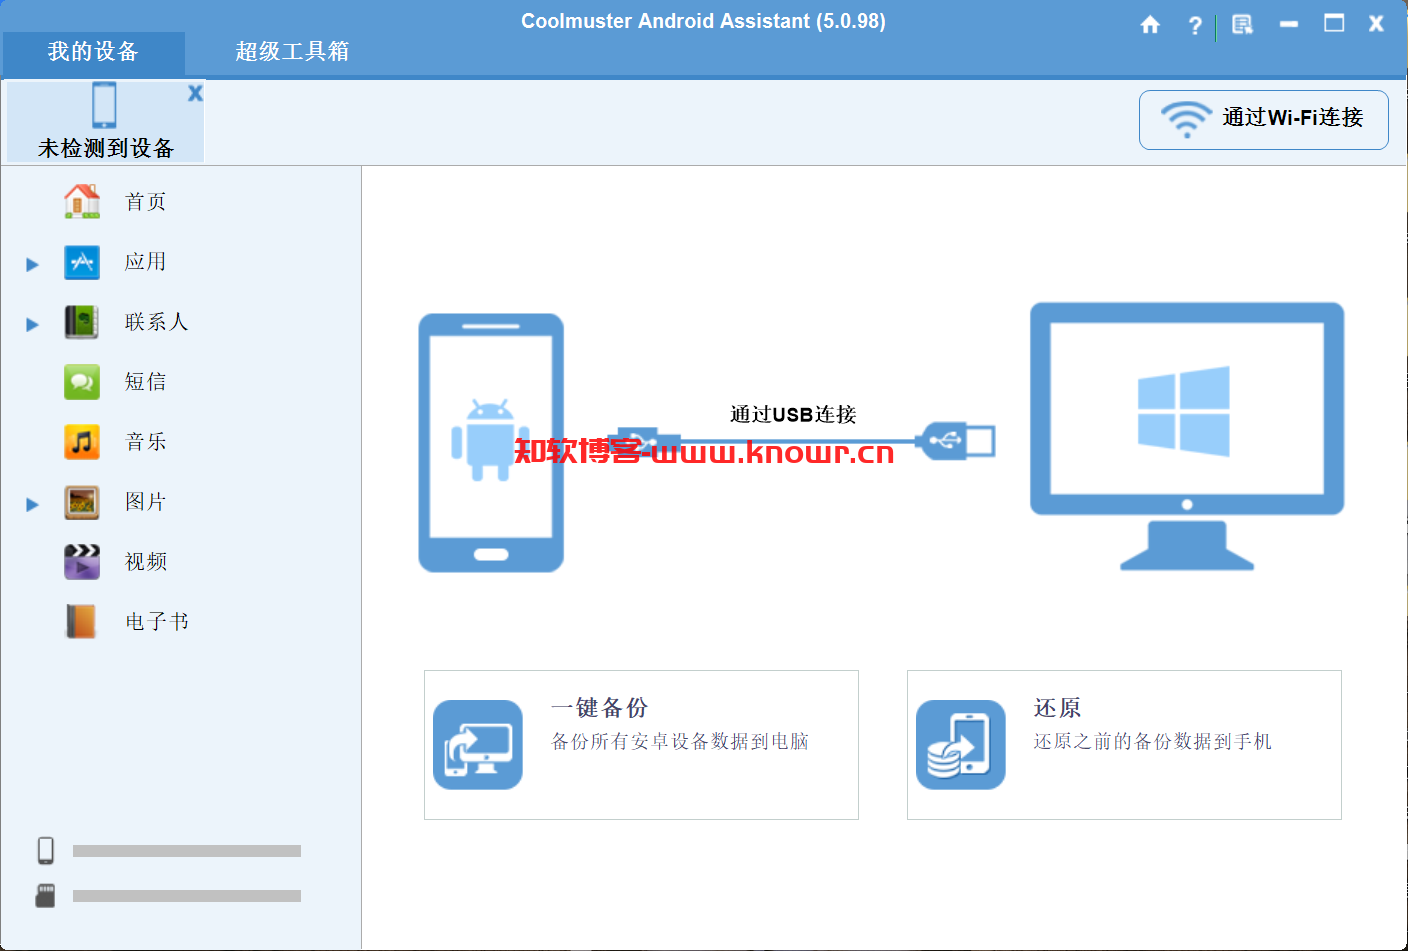 安卓设备管理器 Coolmuster Android Assistant v5.0.98 破解版